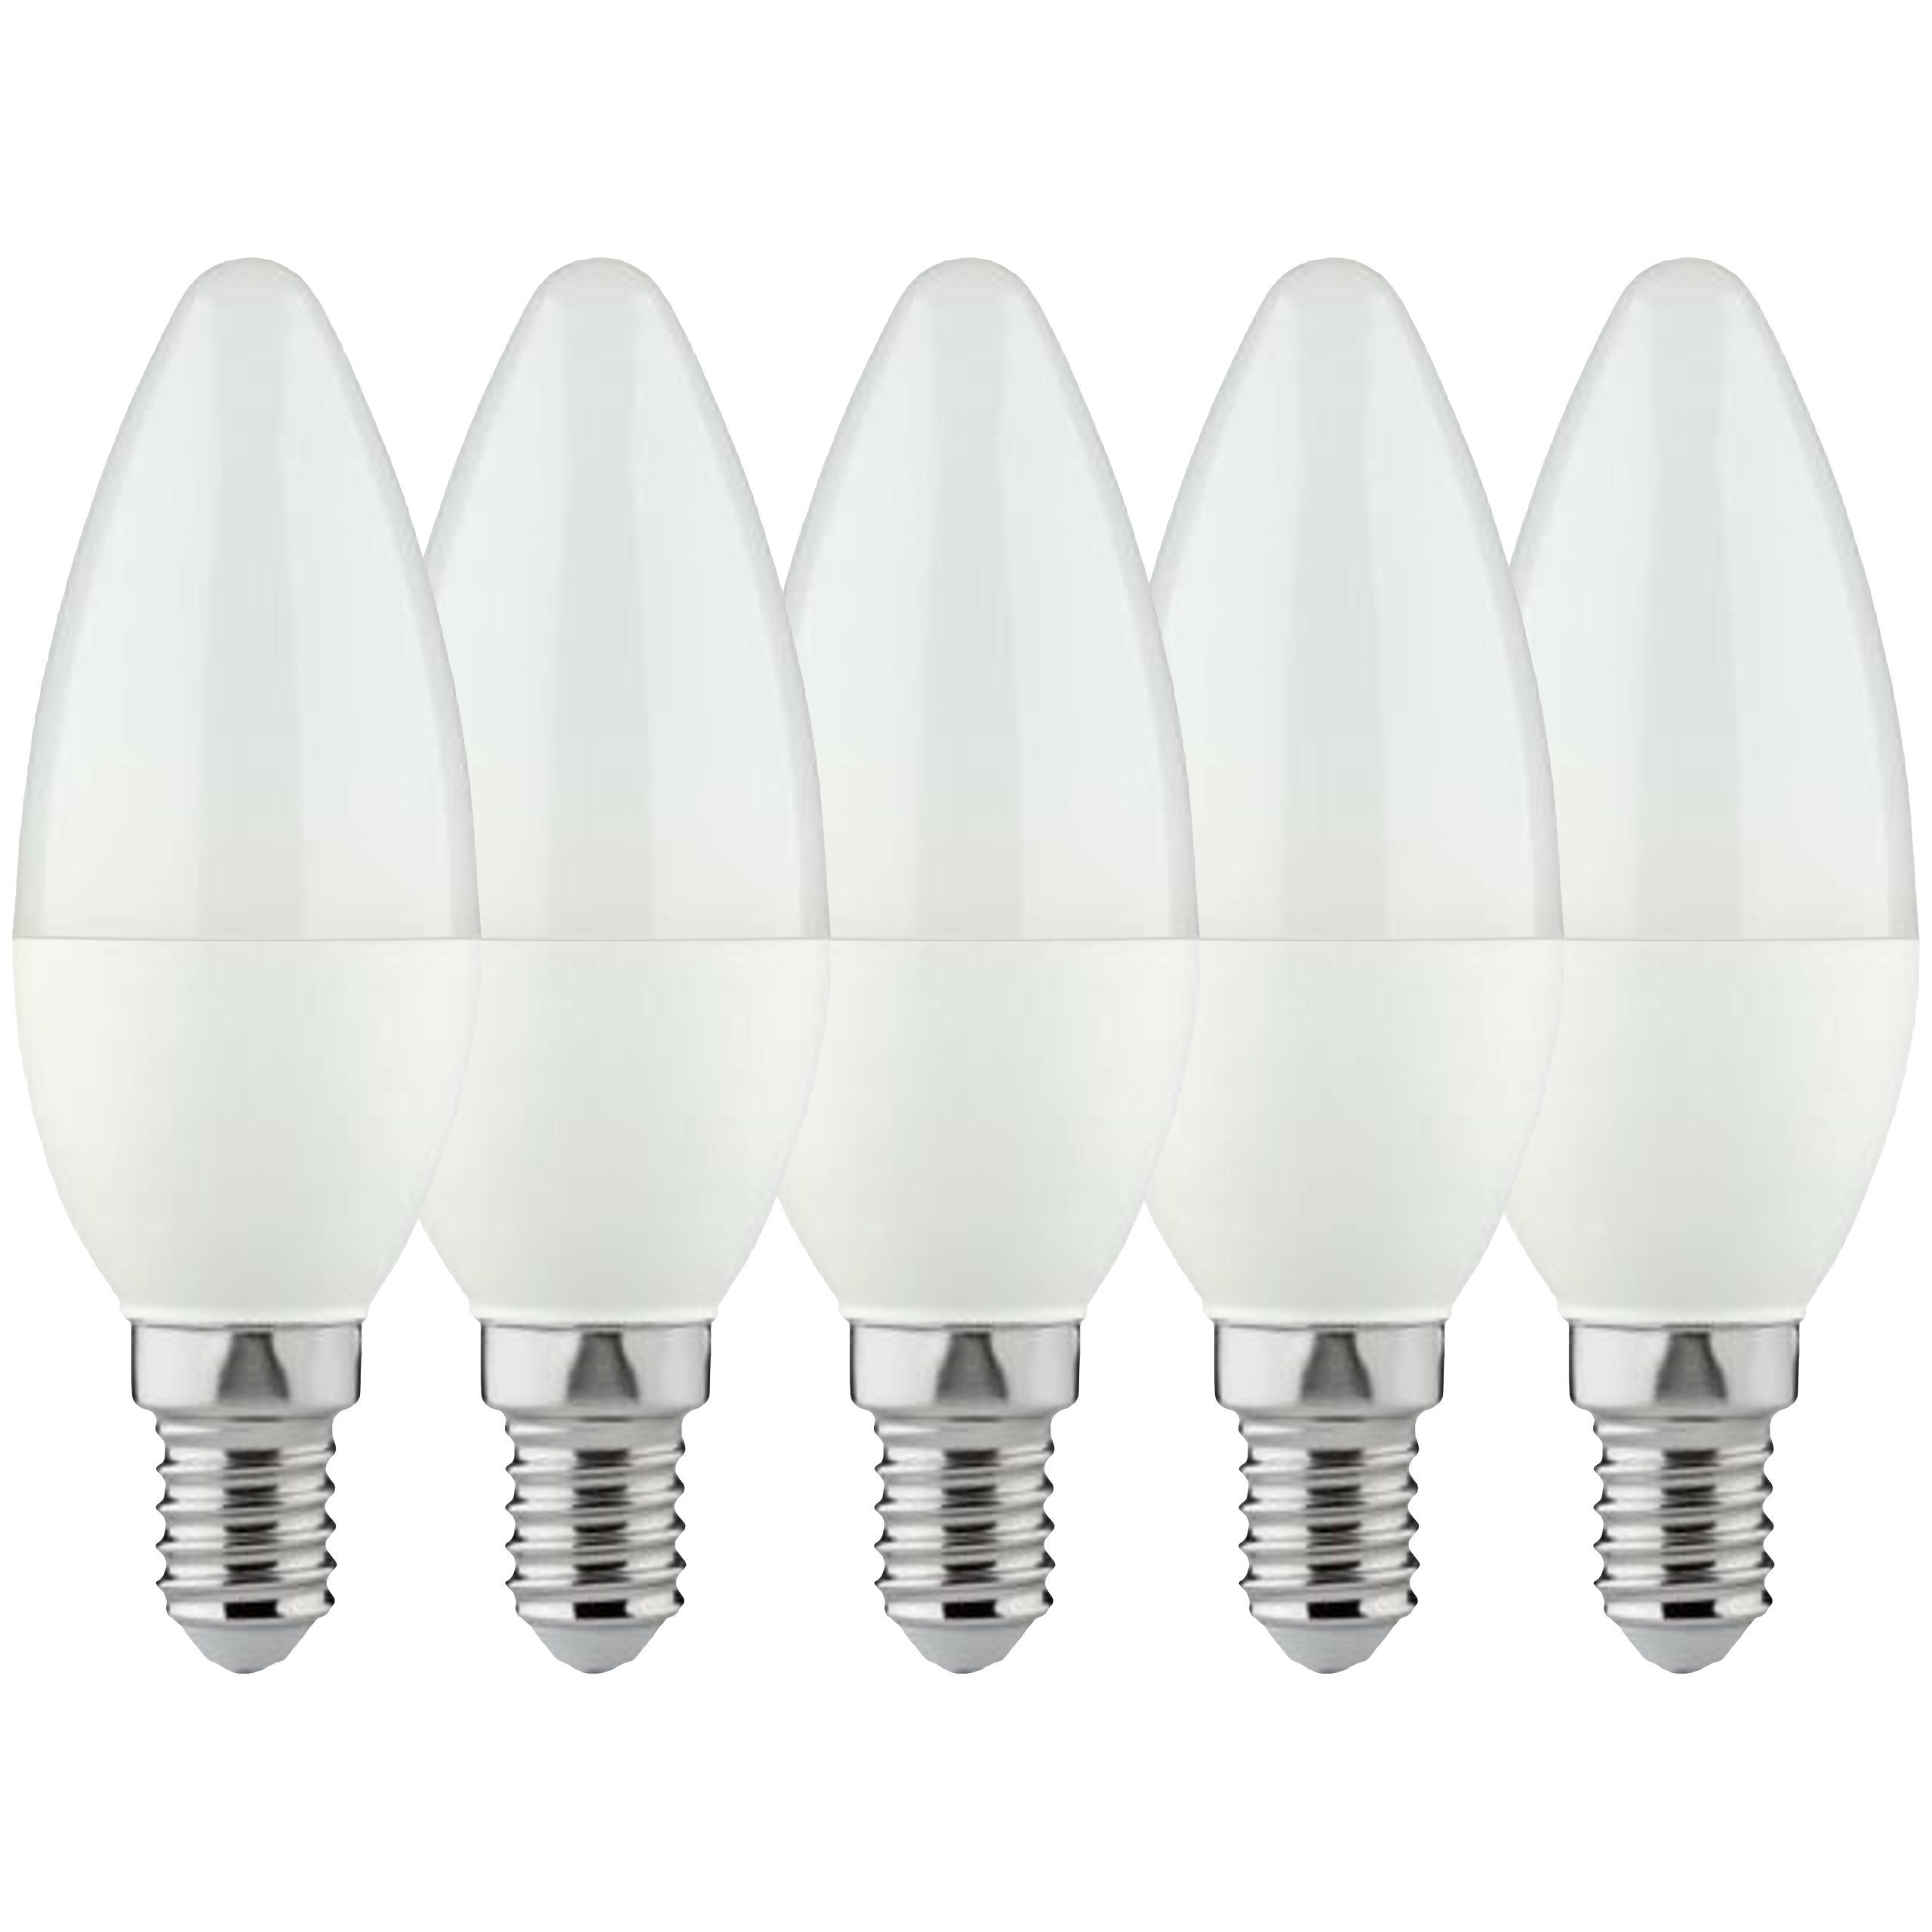 LED's light Basic LED-Leuchtmittel 0620303 LED Kerze, E14, E14 4.5W warmweiß Opal C35 5-Pack